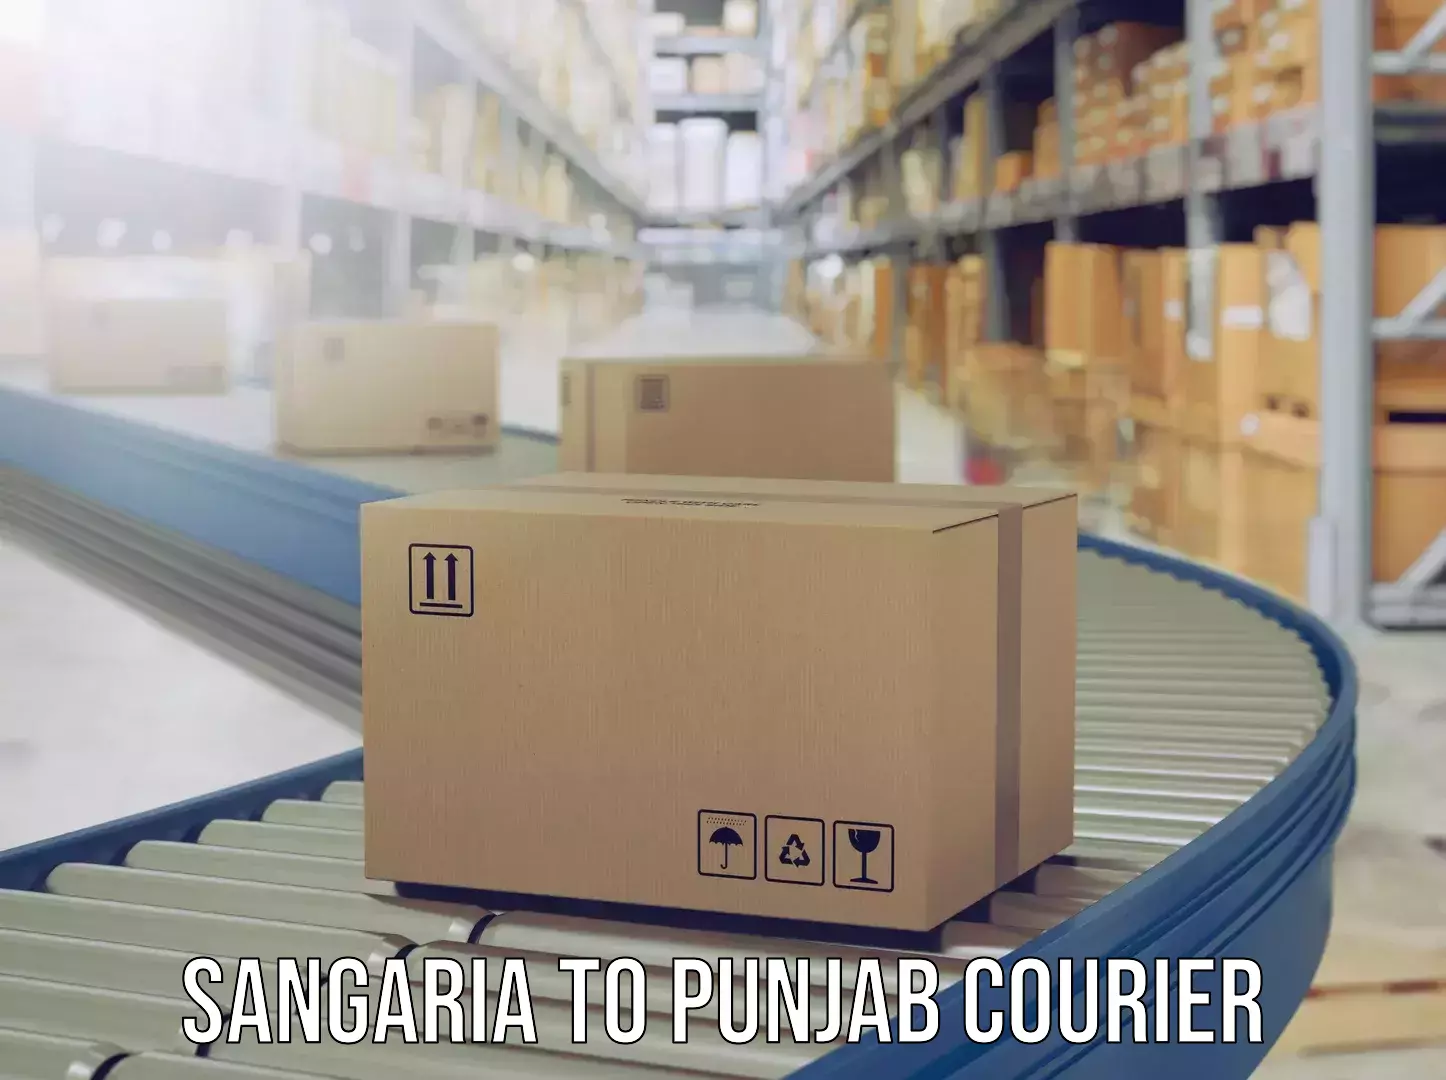 Luggage shipment tracking in Sangaria to Punjab